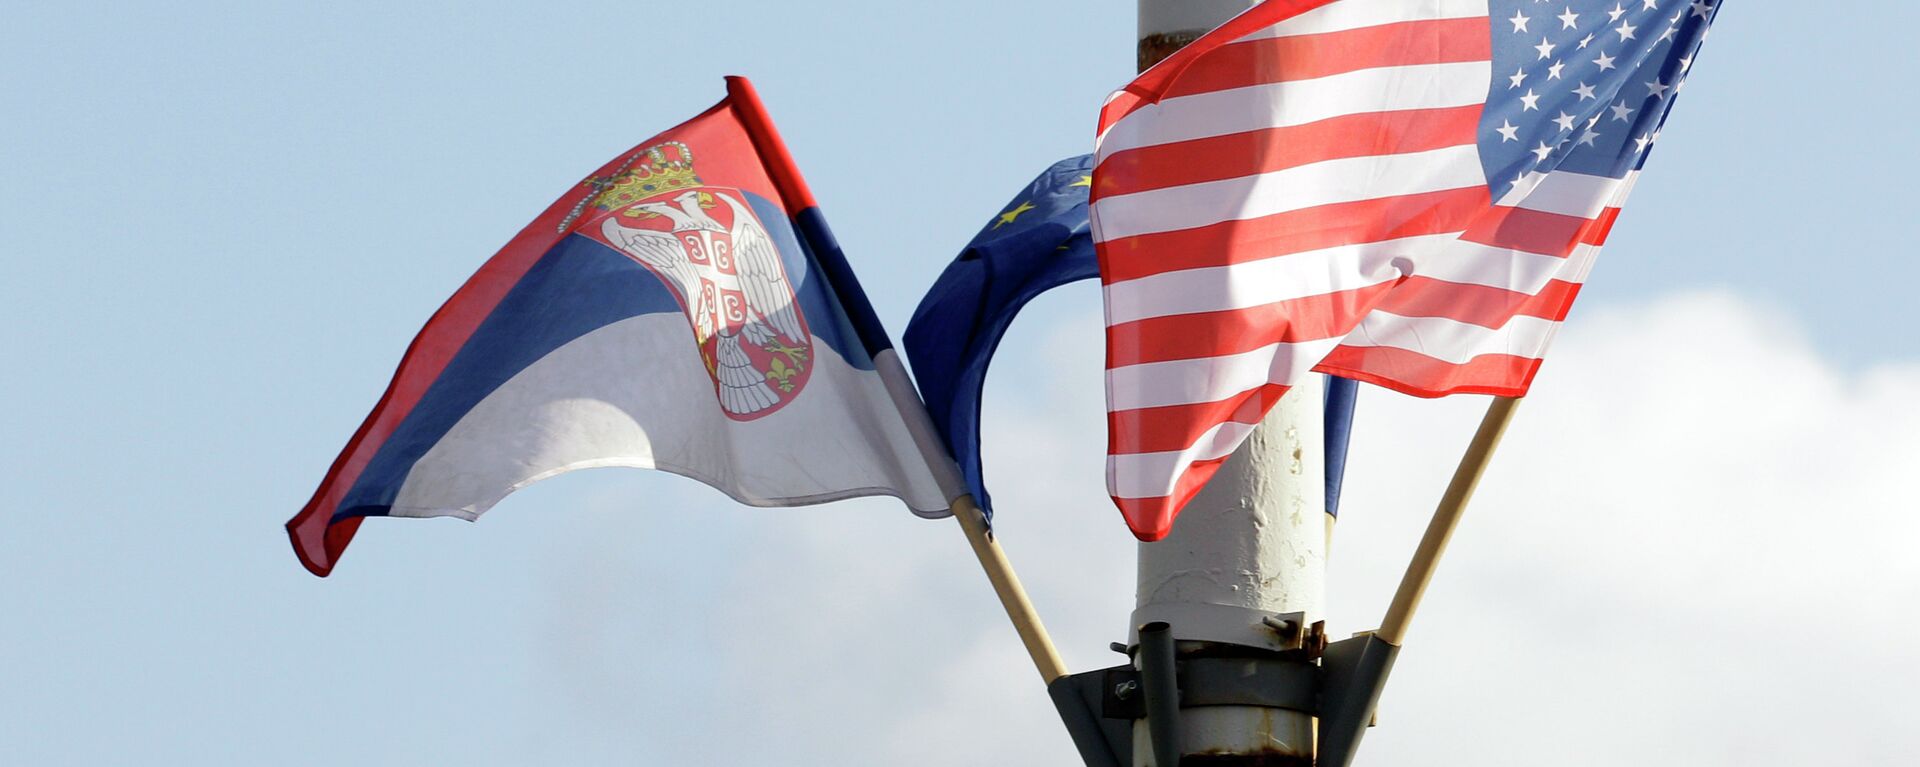 Zastave Srbije, EU i Amerike - Sputnik Srbija, 1920, 15.09.2021